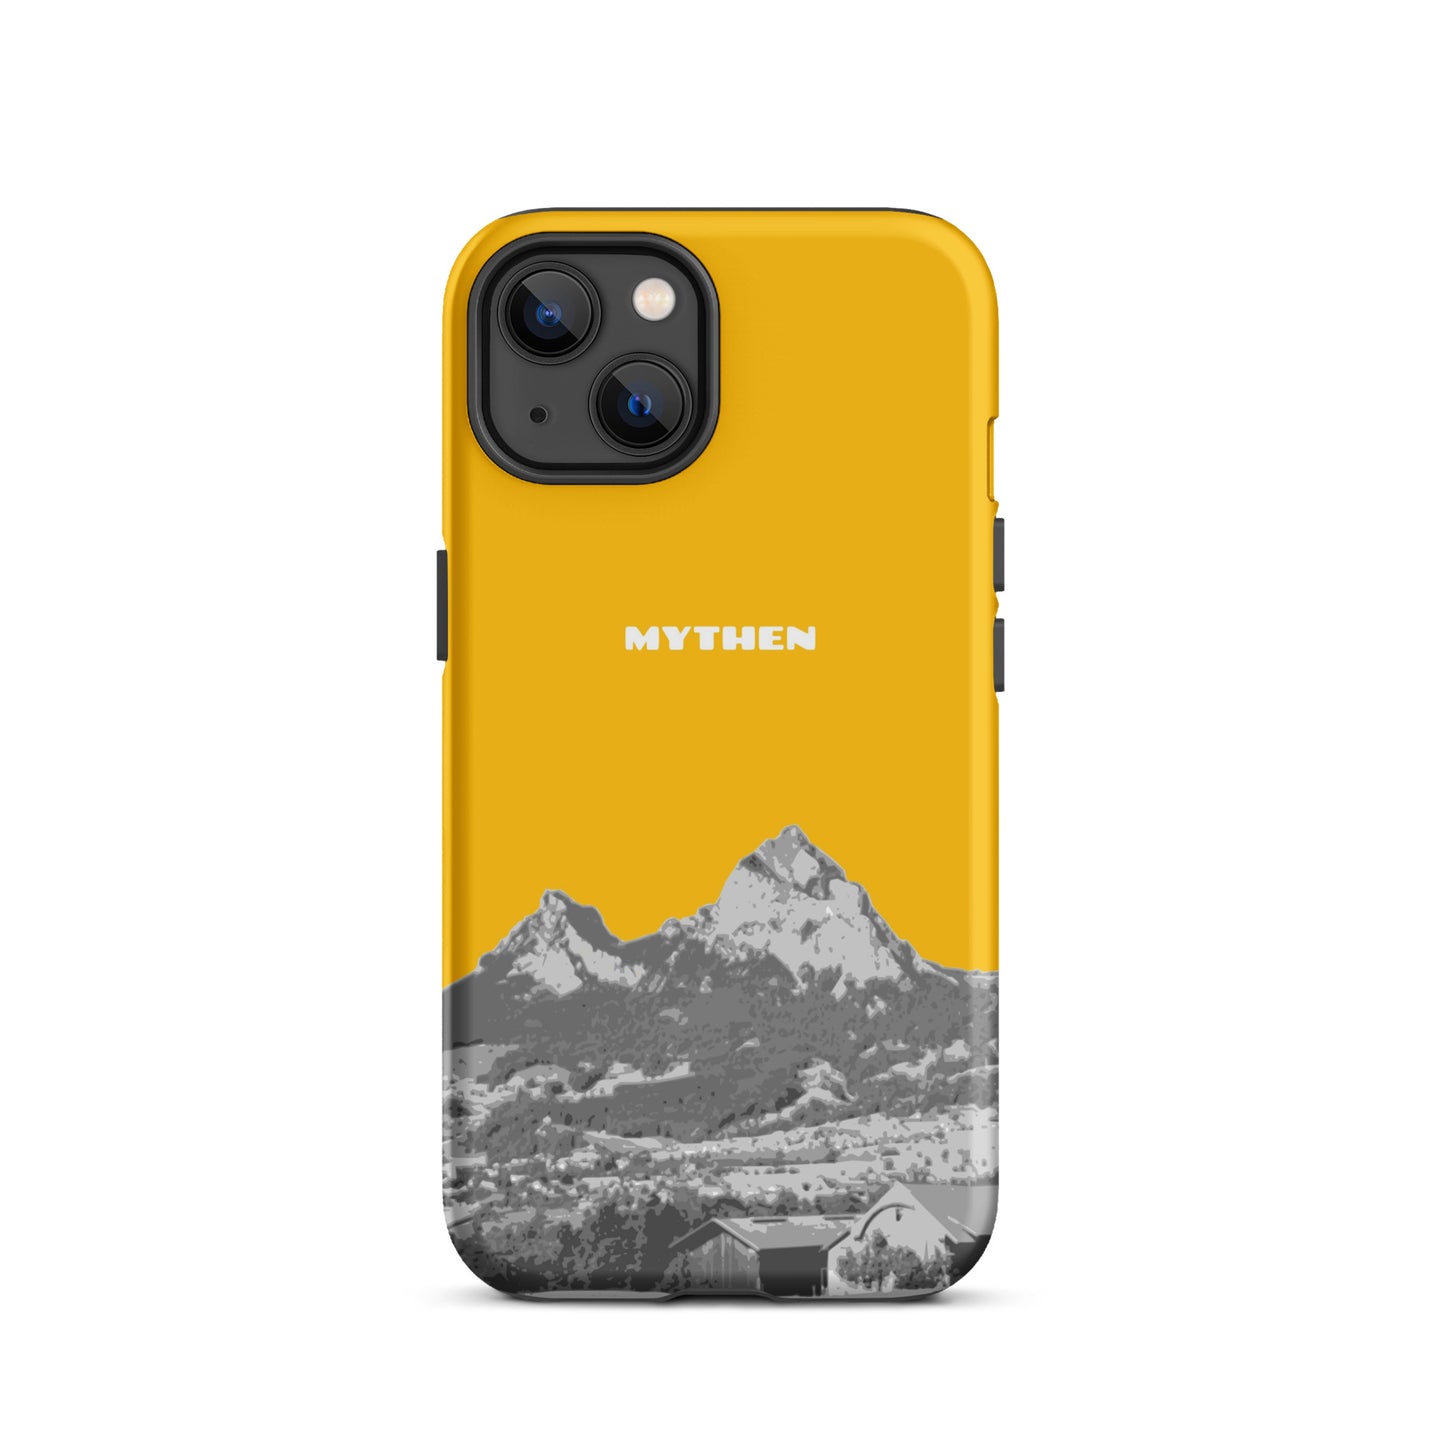 Hülle für das iPhone 13 von Apple in der Farbe Goldgelb, dass den Grossen Mythen und den Kleinen Mythen bei Schwyz zeigt. 